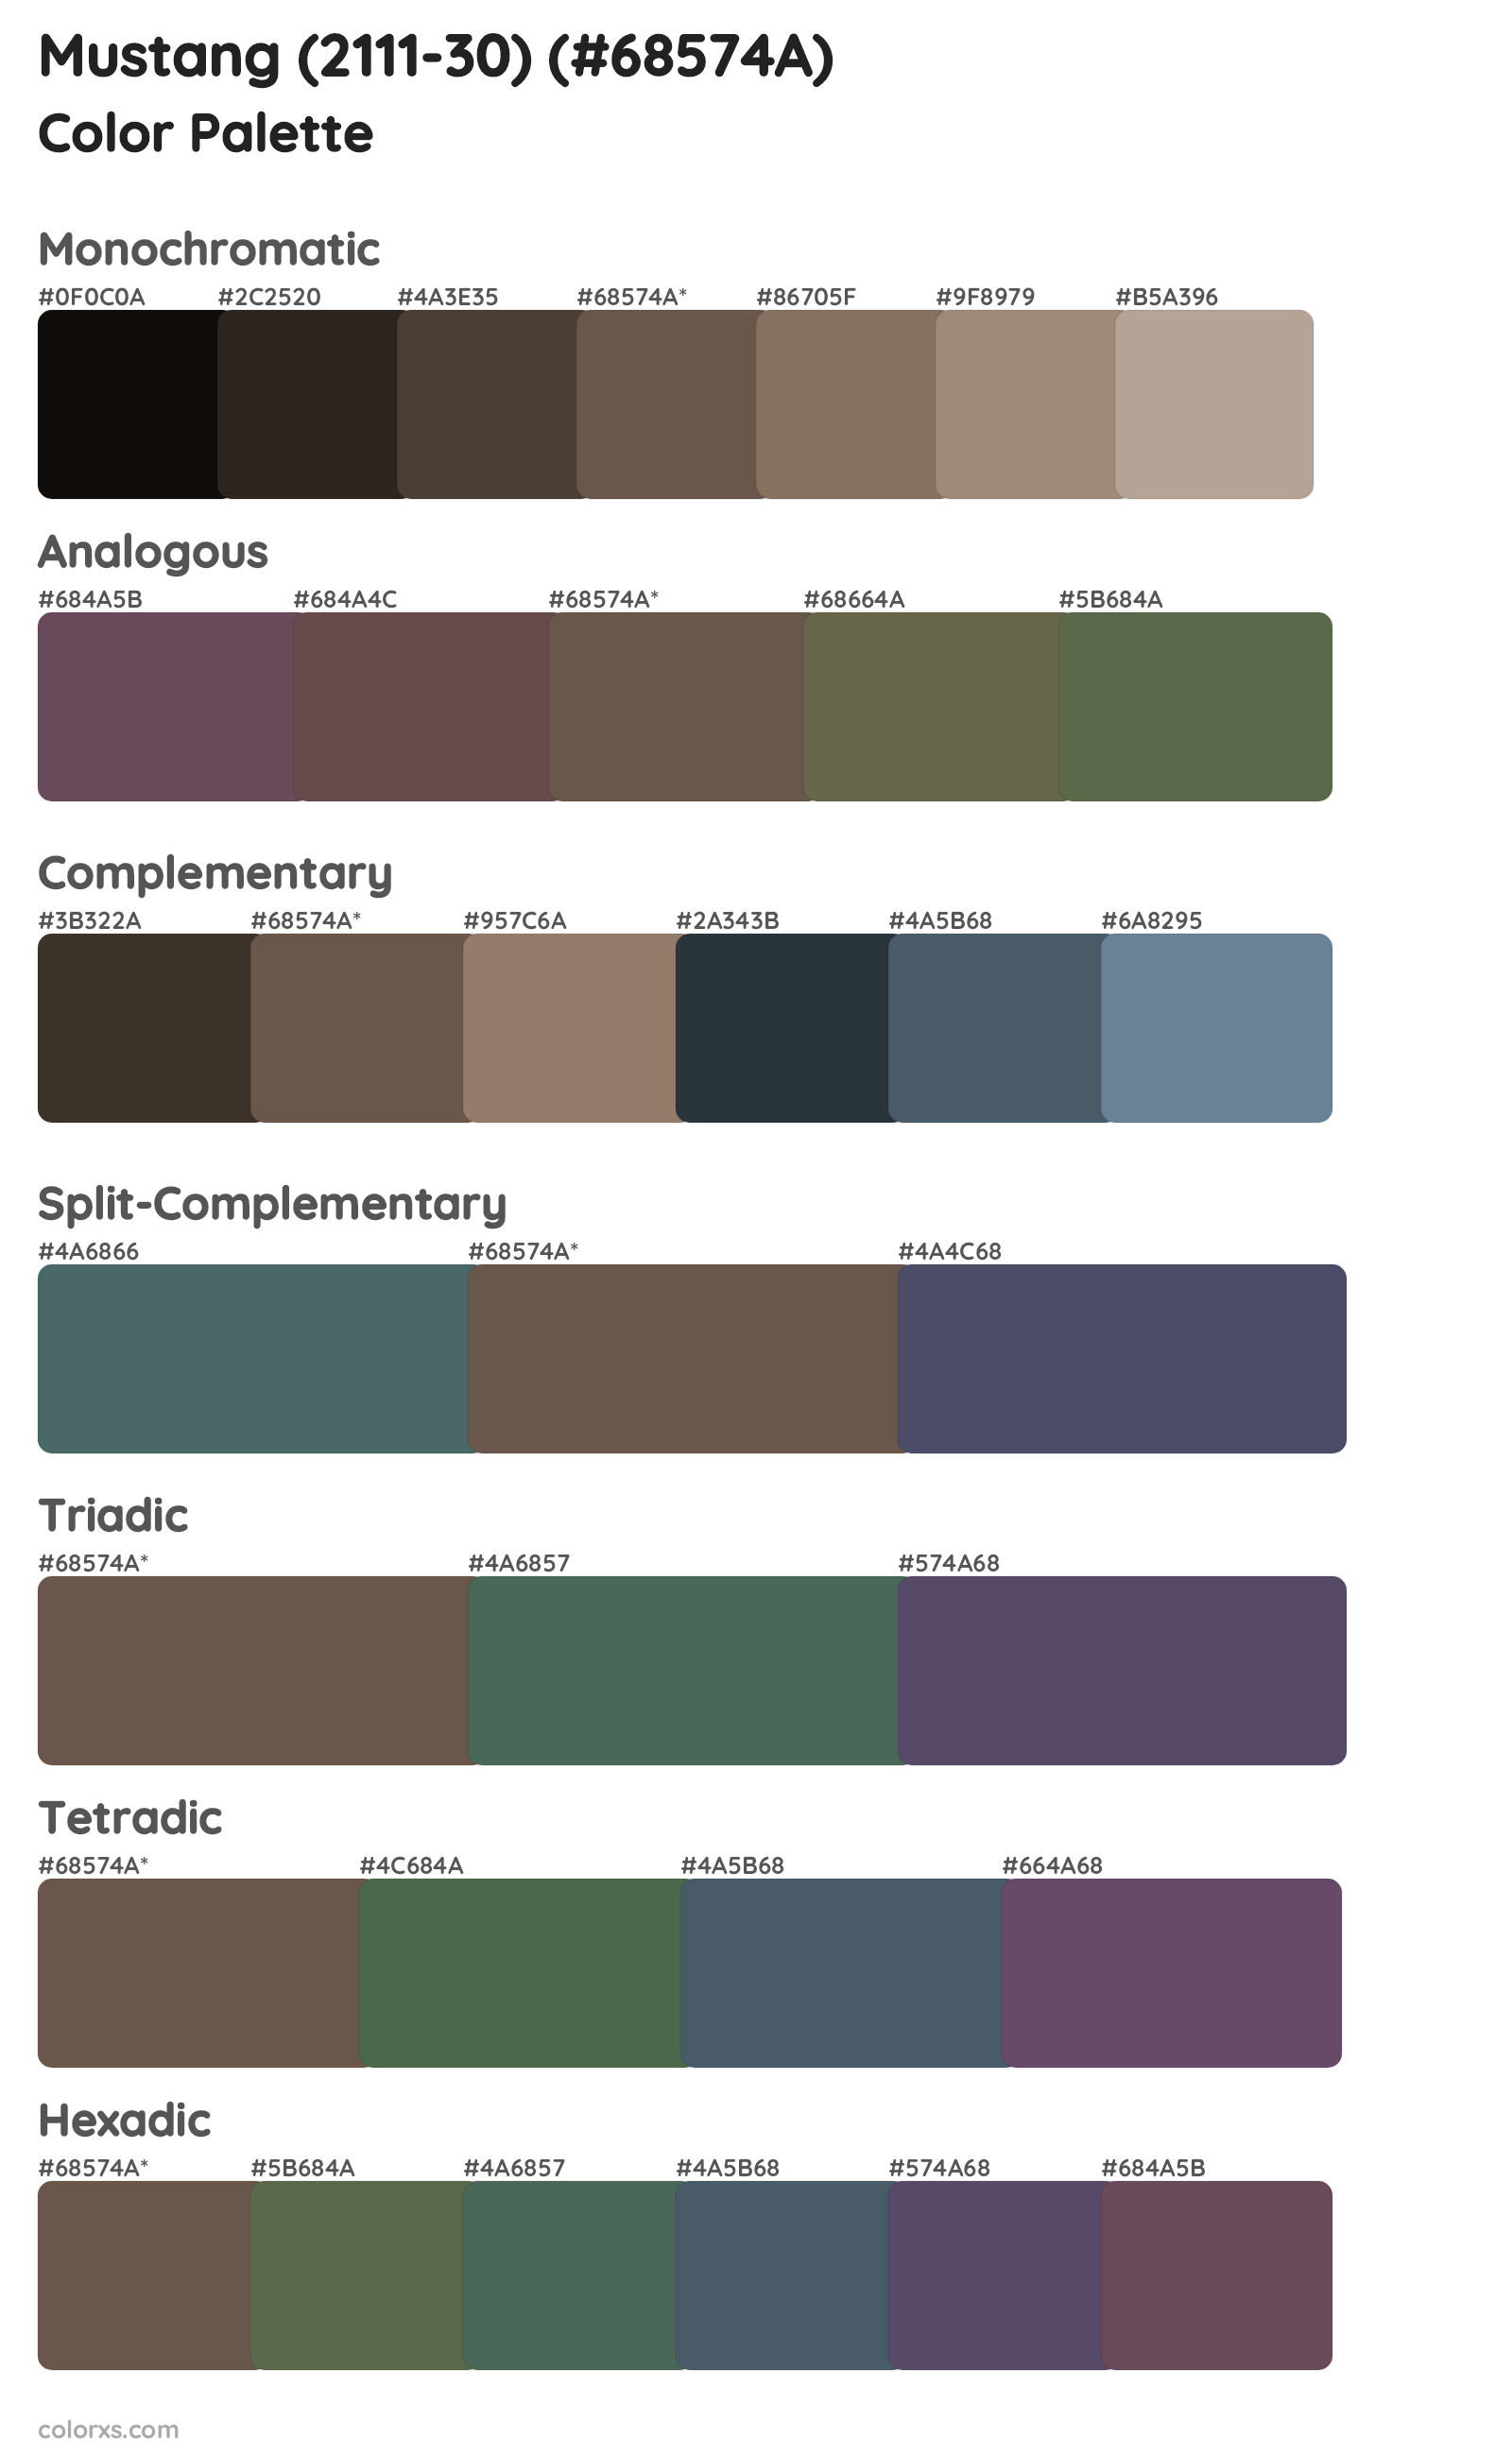 Mustang (2111-30) Color Scheme Palettes